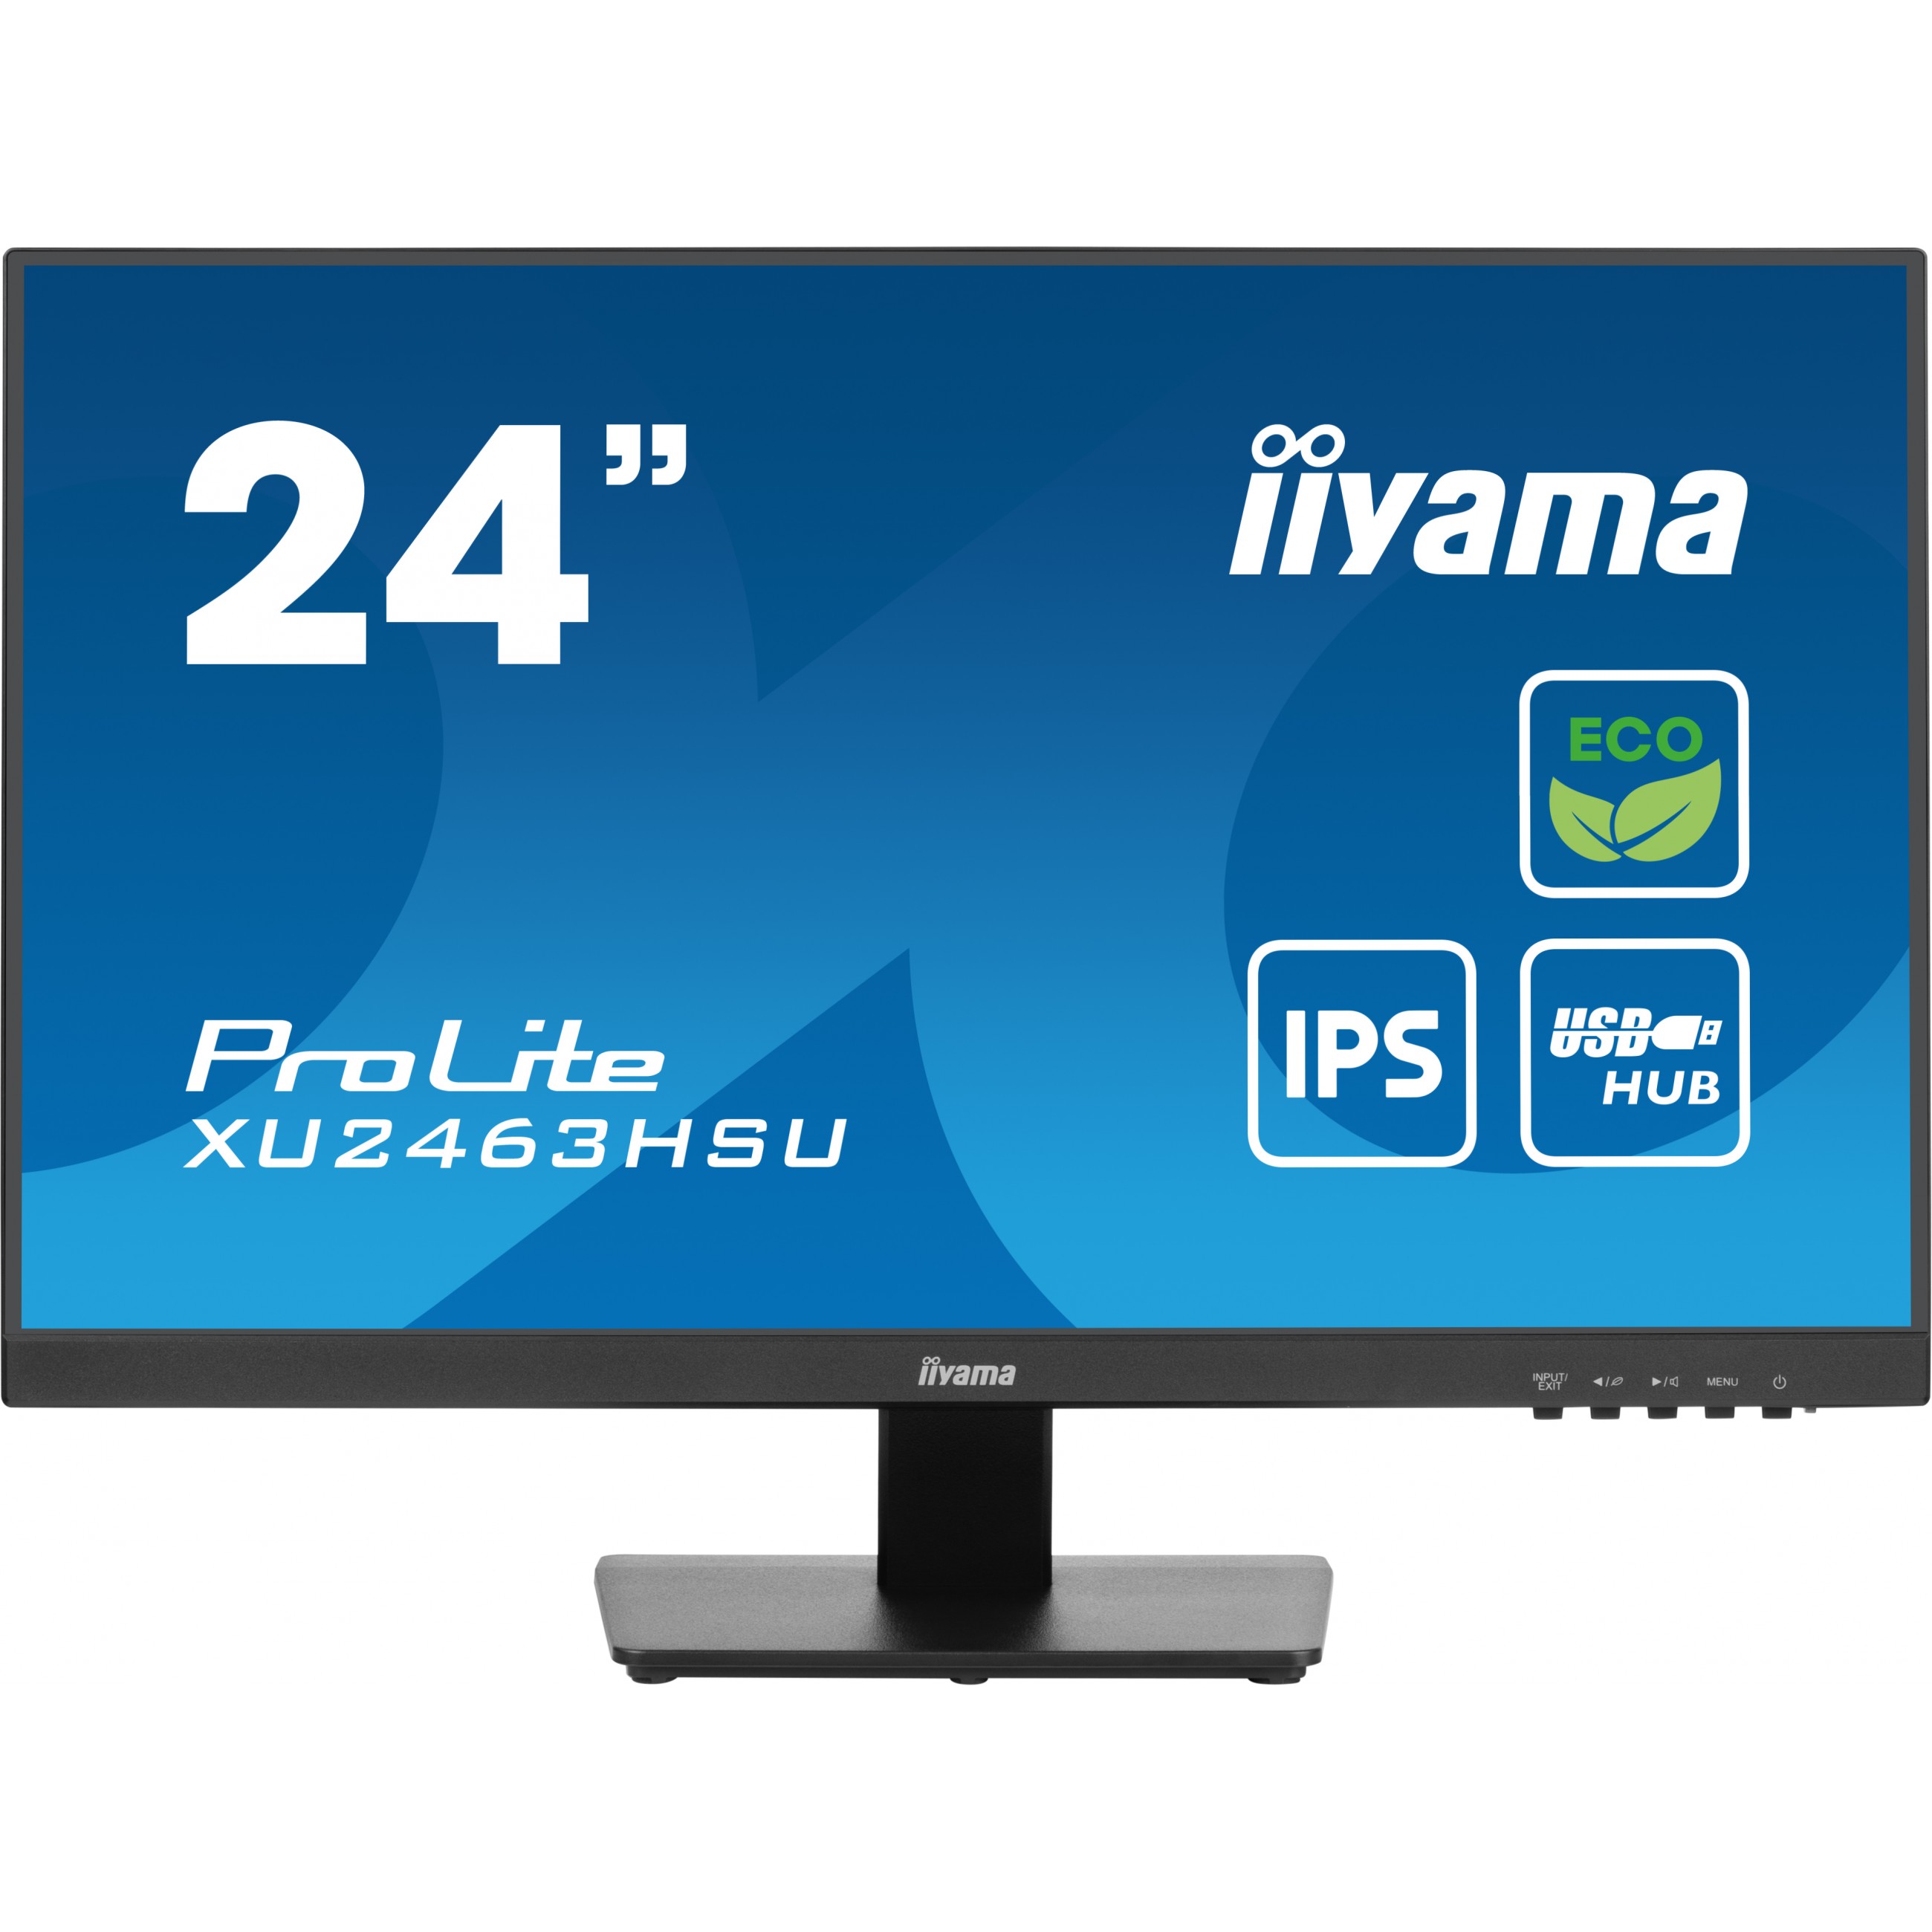 iiyama ProLite XU2463HSU-B1 computer monitor - XU2463HSU-B1